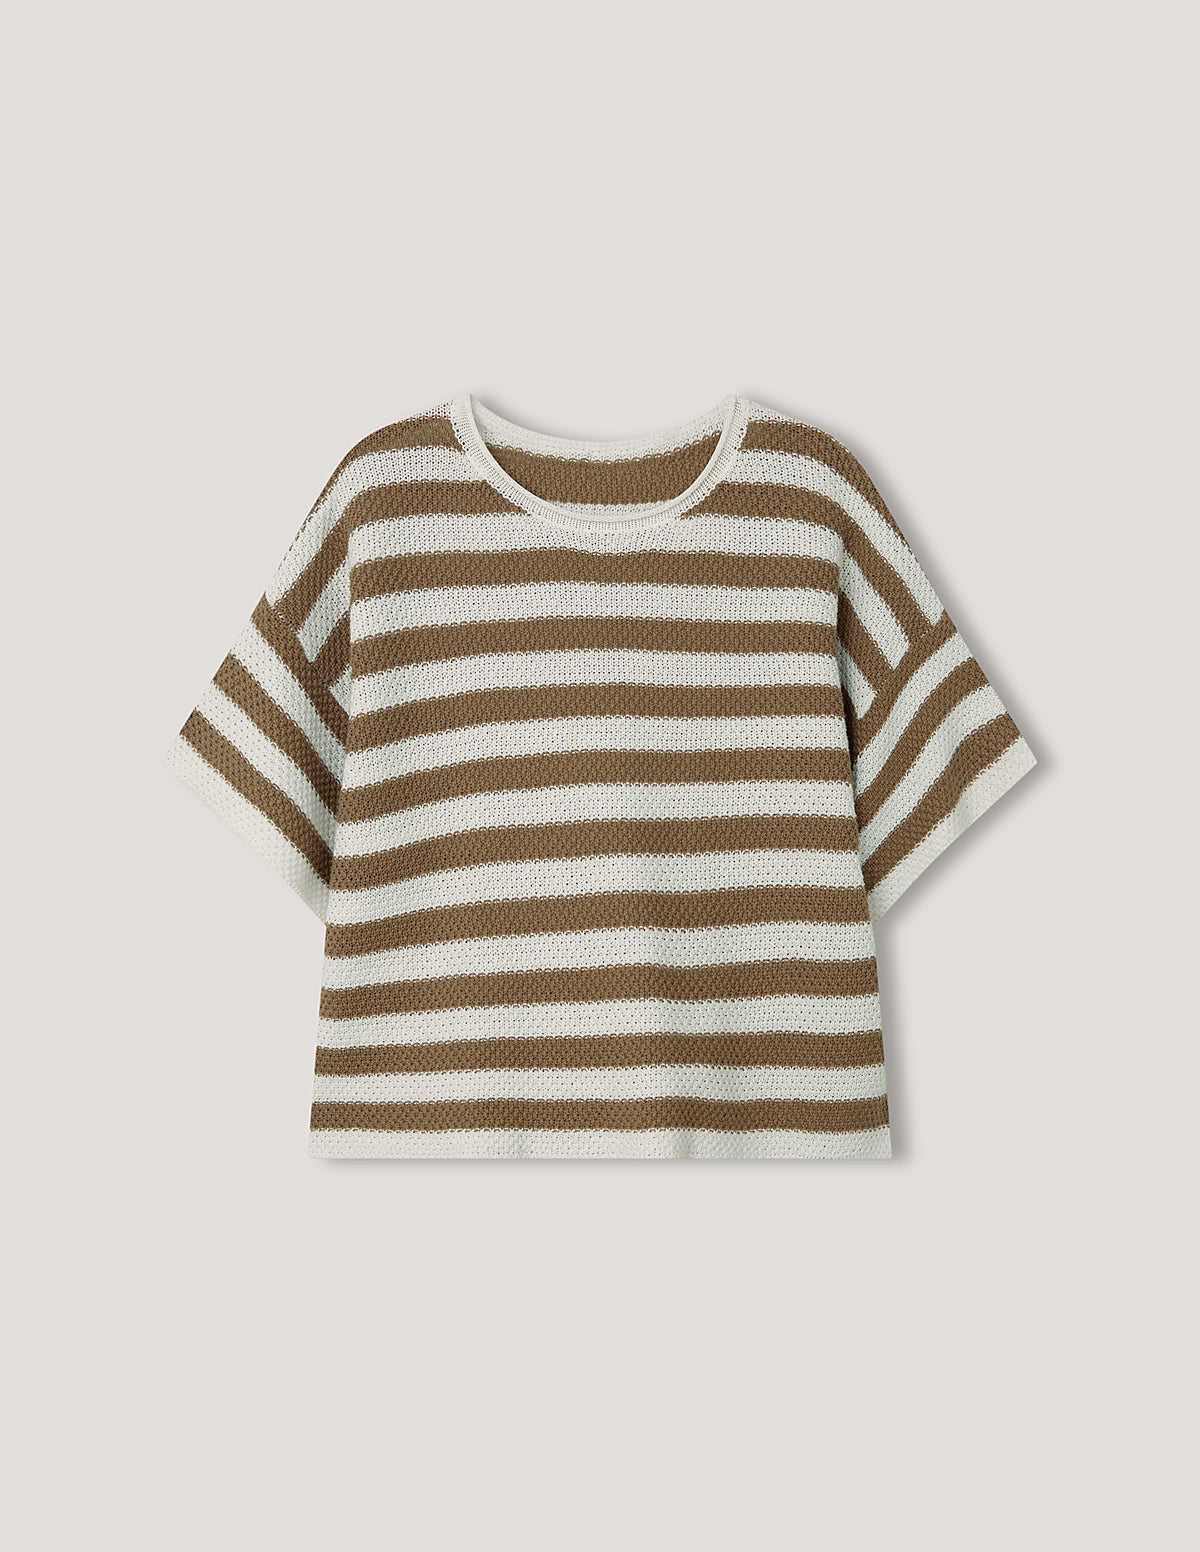 tan stripe cotton knit t.shirt